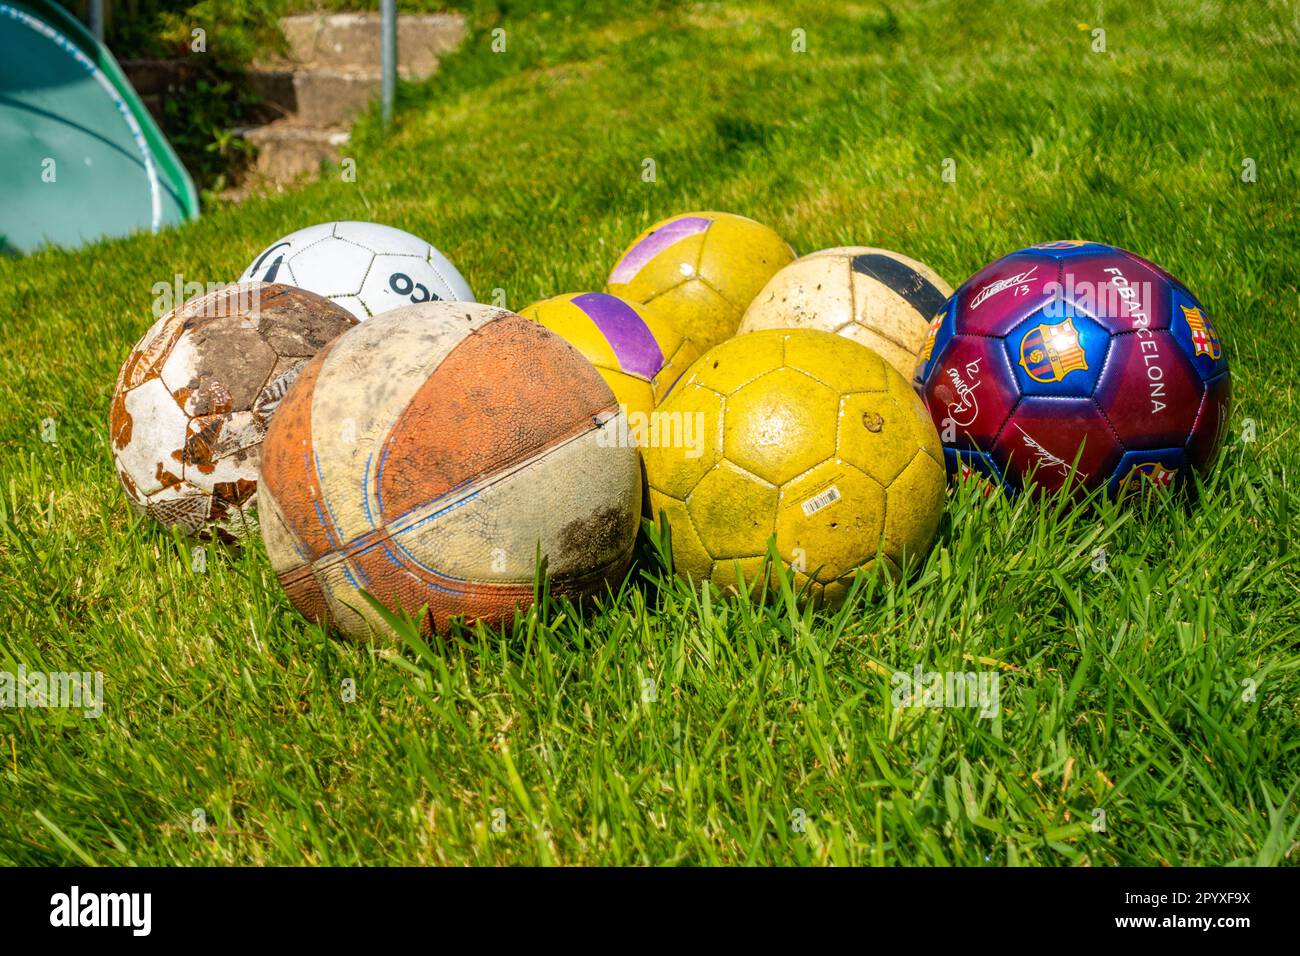 Eine Sammlung von Fußbällen und Basketbällen draußen in einem Garten auf einem Rasen Stockfoto